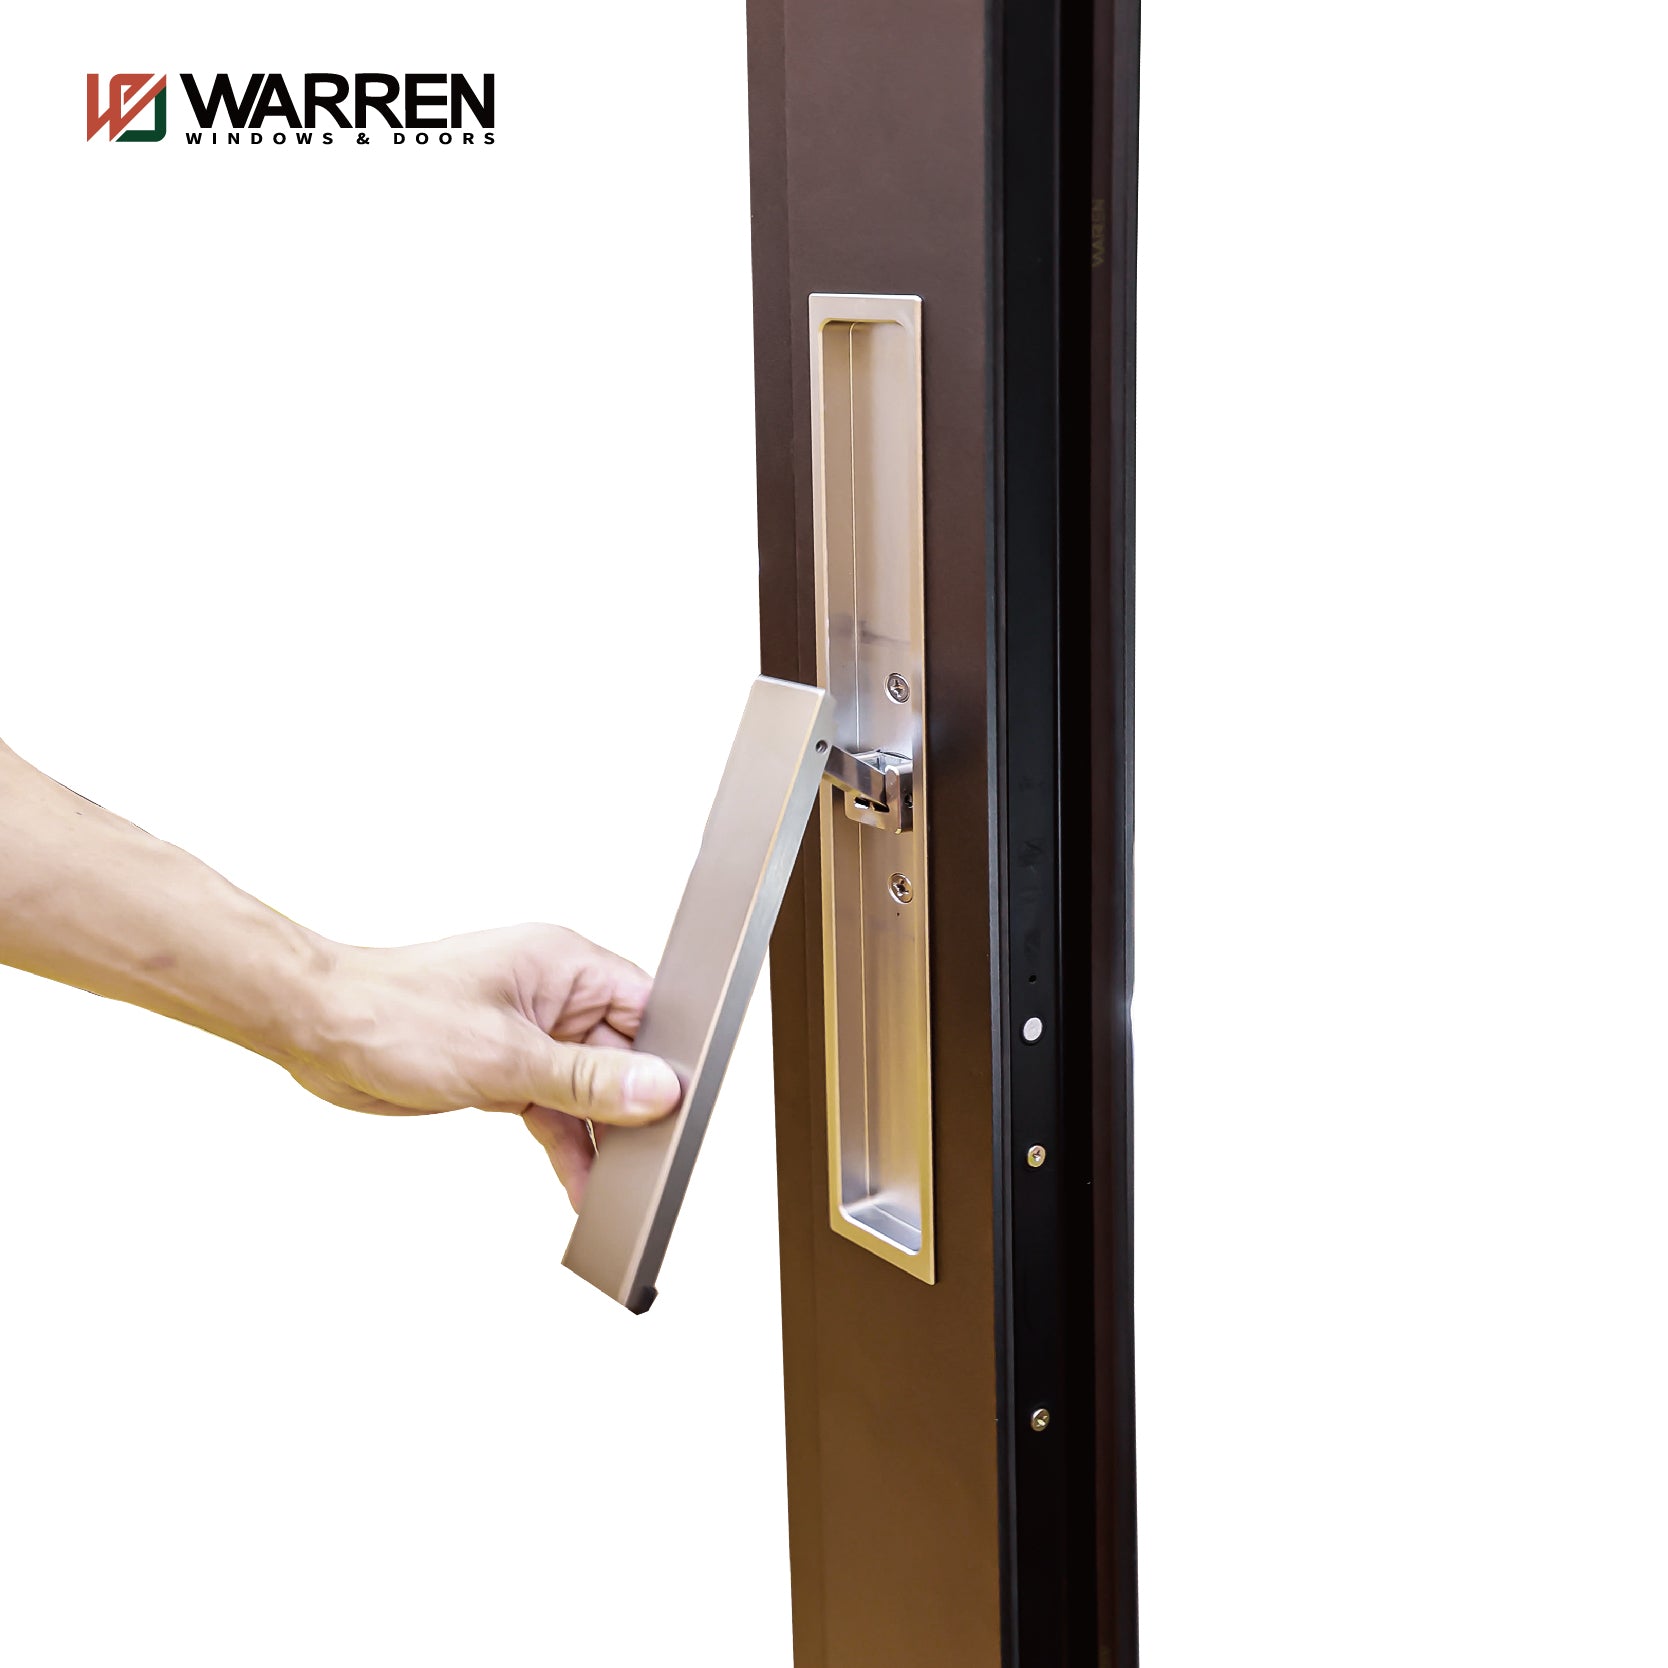 Warren Thermal Break House Exterior  Aluminium Profiles Glass Window And Door Heavy Duty Patio Sliding Doors